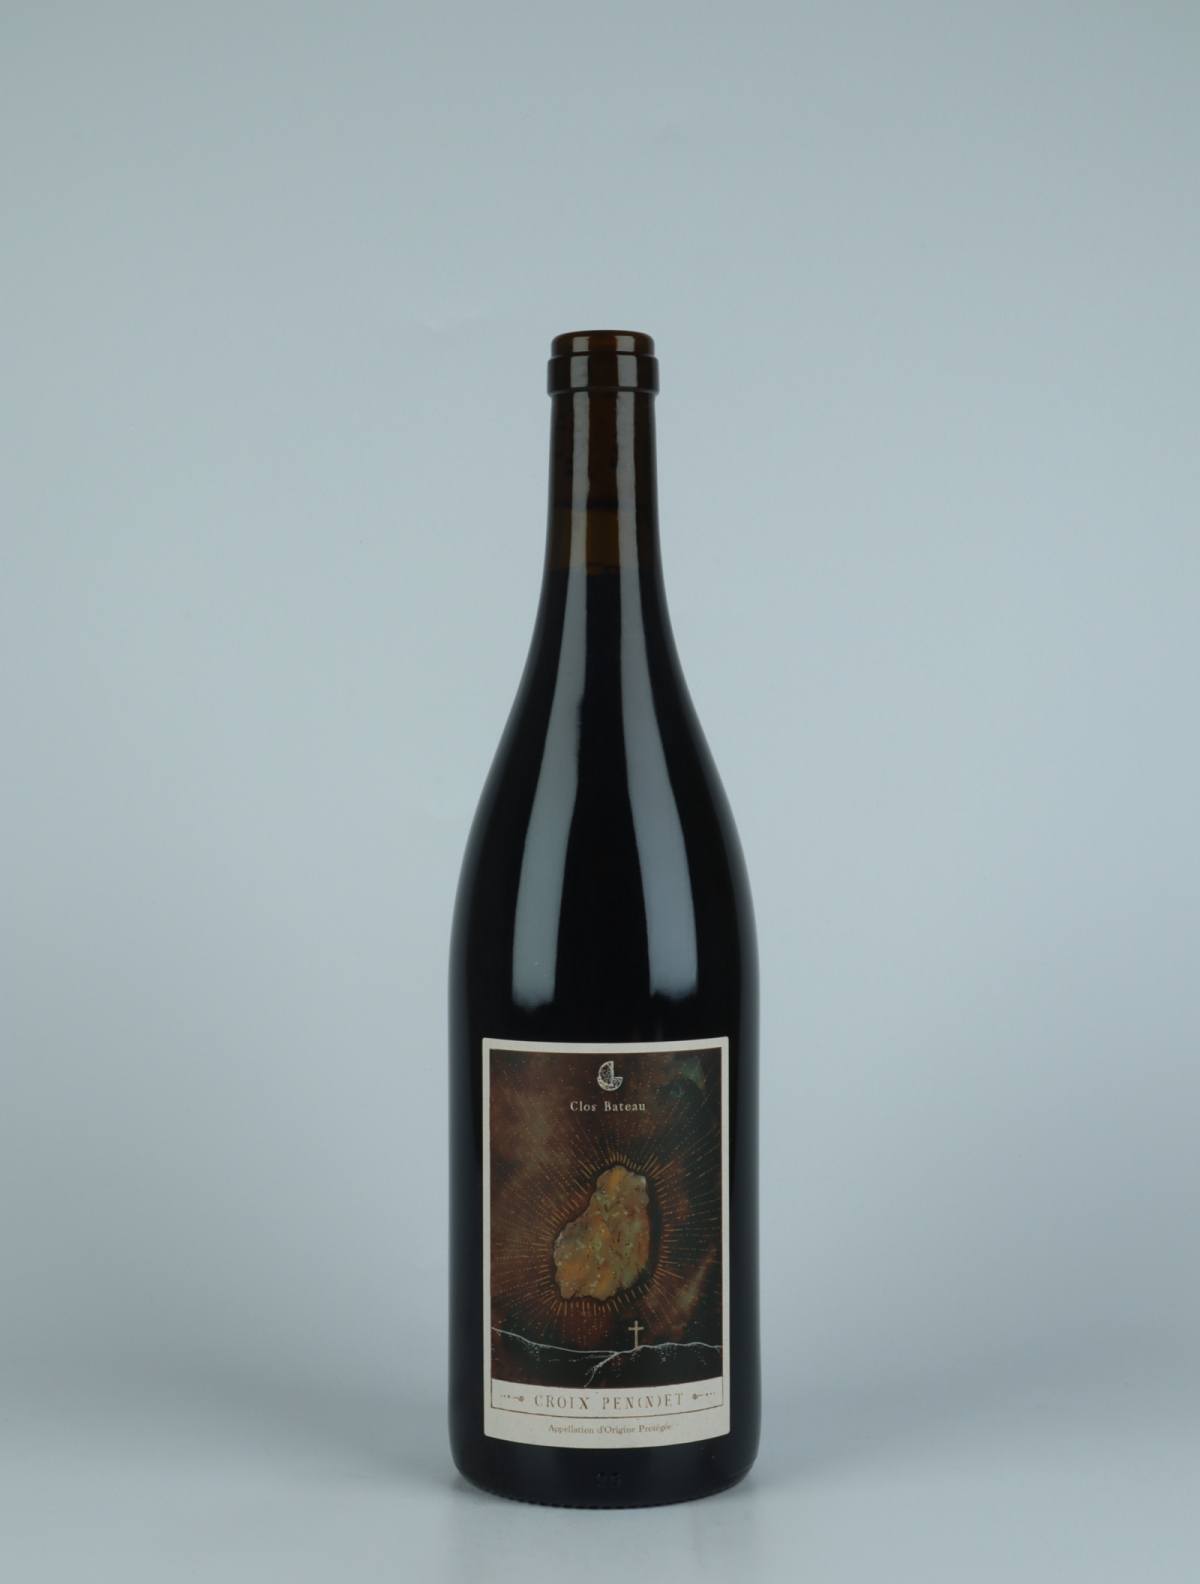 En flaske 2021 Croix Pennet Rødvin fra Clos Bateau, Beaujolais i Frankrig